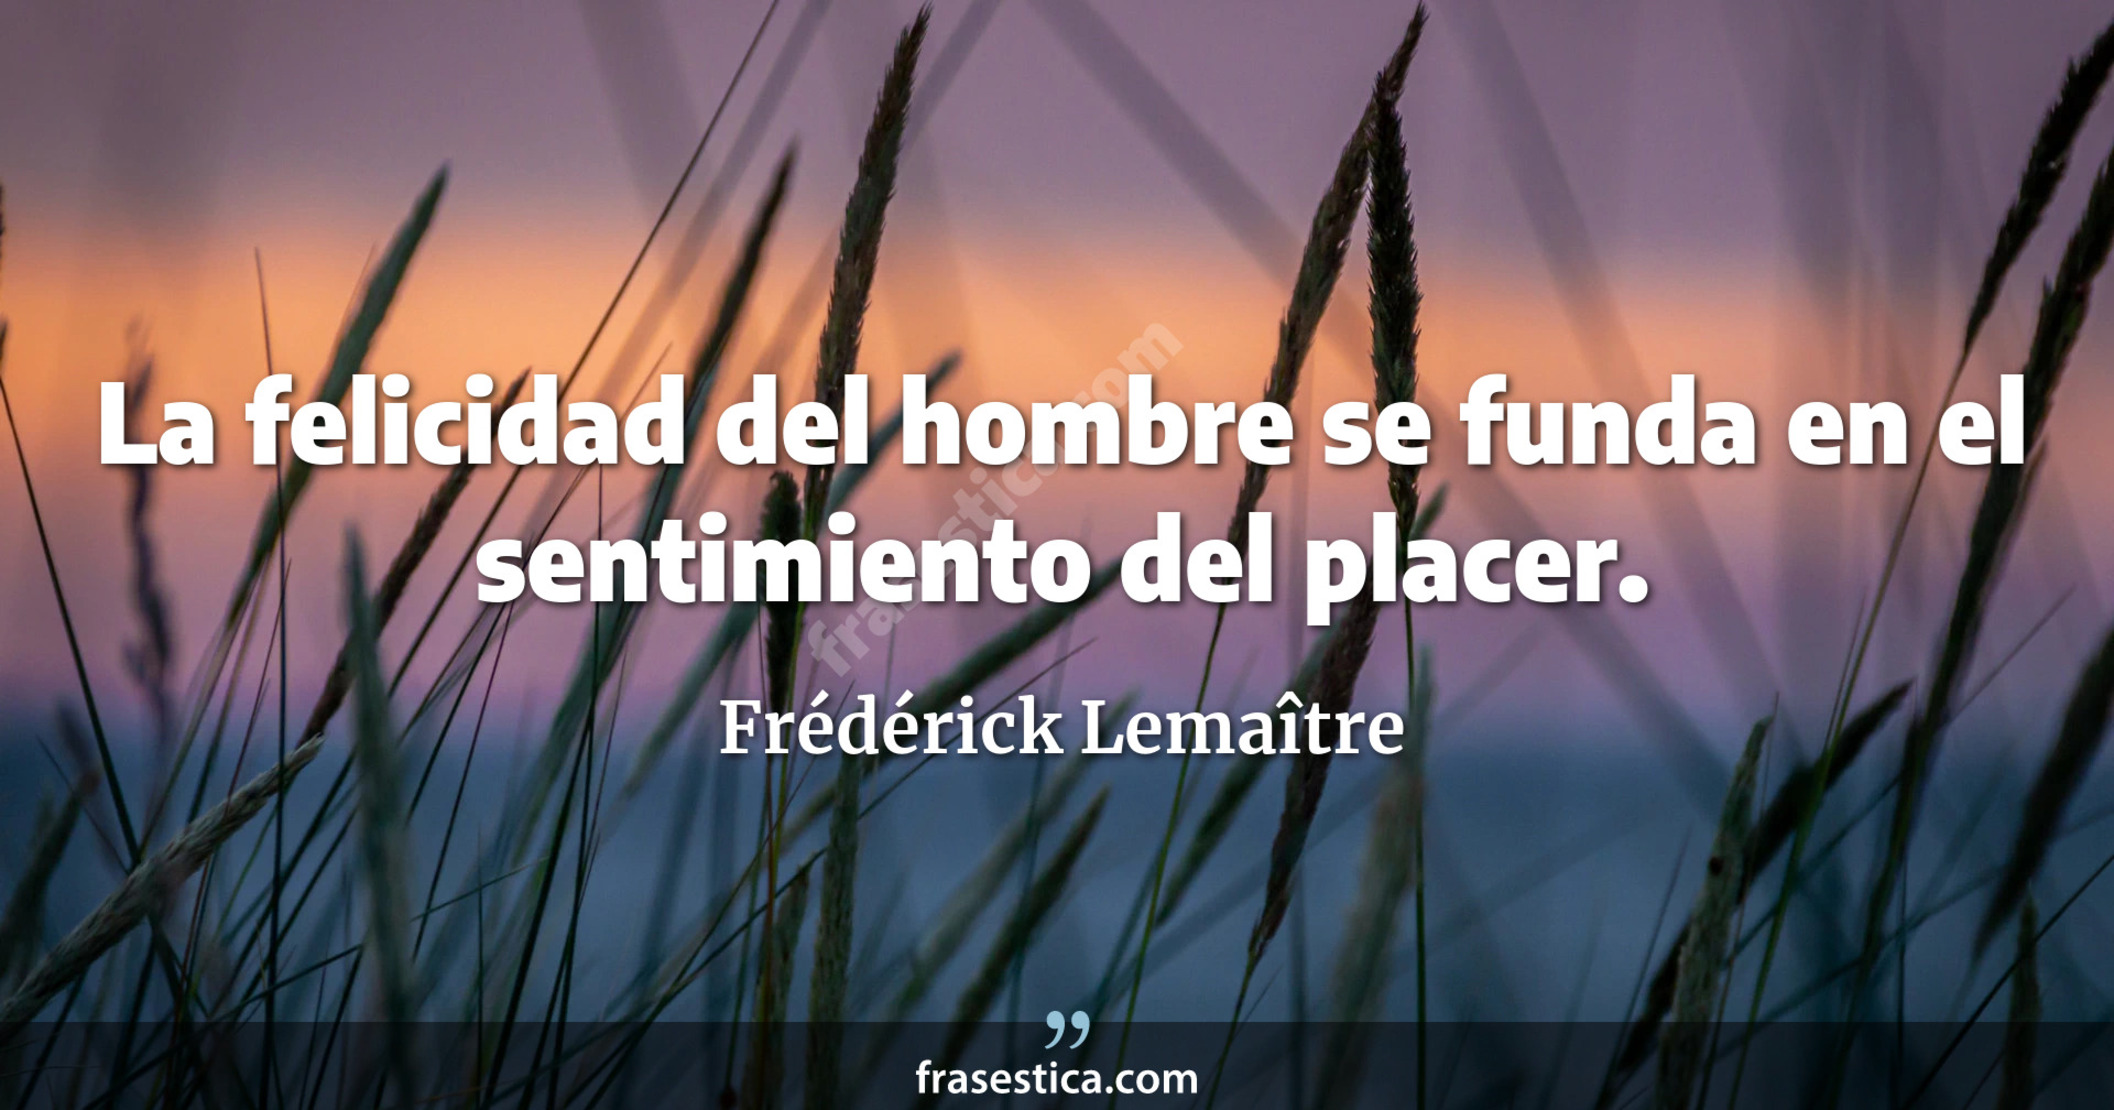 La felicidad del hombre se funda en el sentimiento del placer. - Frédérick Lemaître